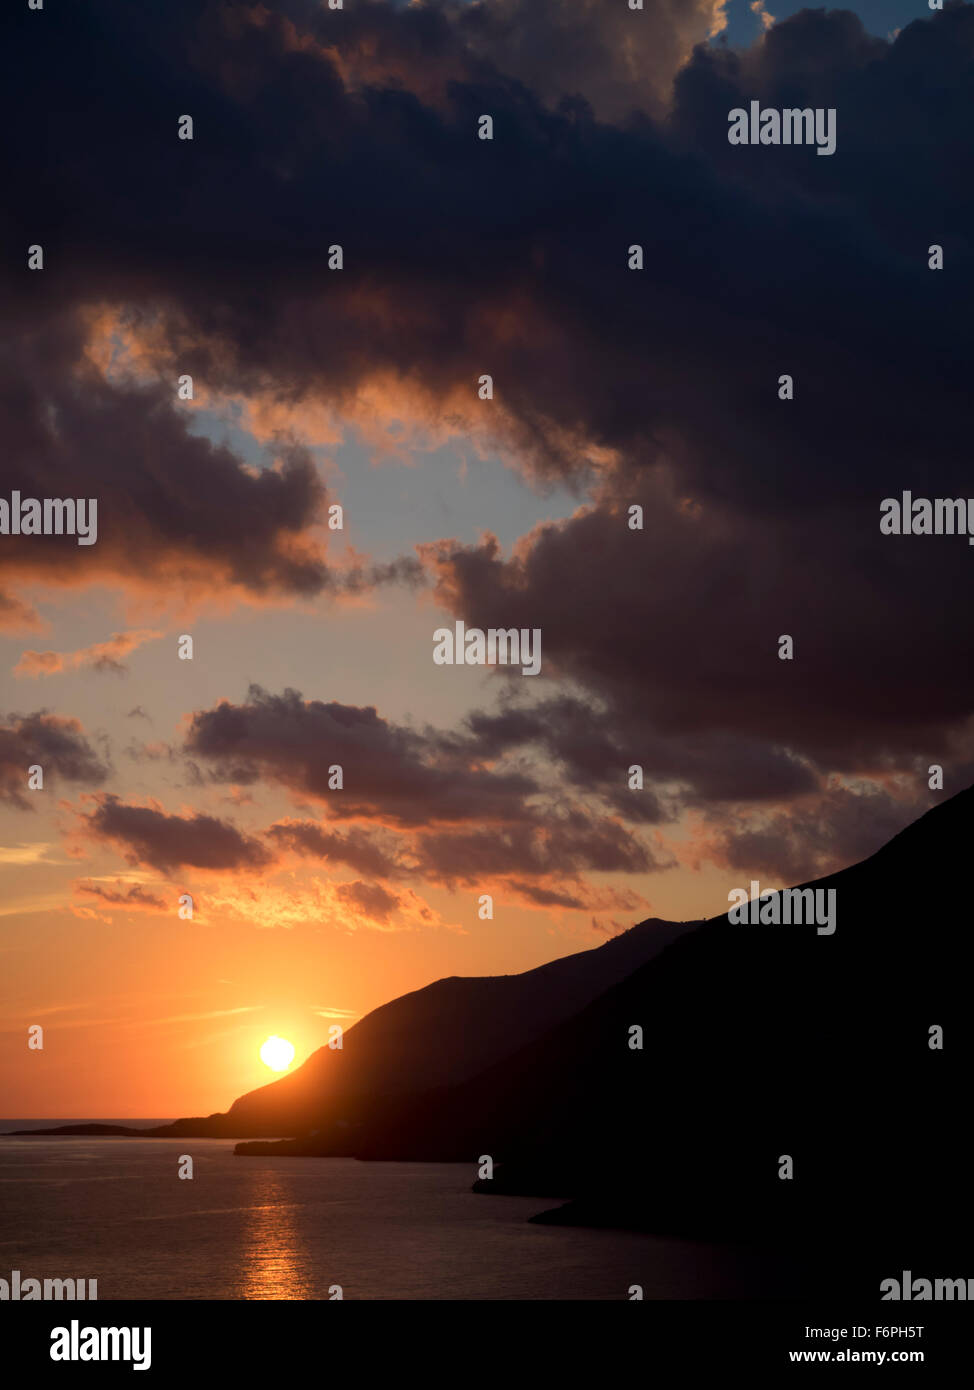 Sonnenuntergang in Kreta Foto Stock